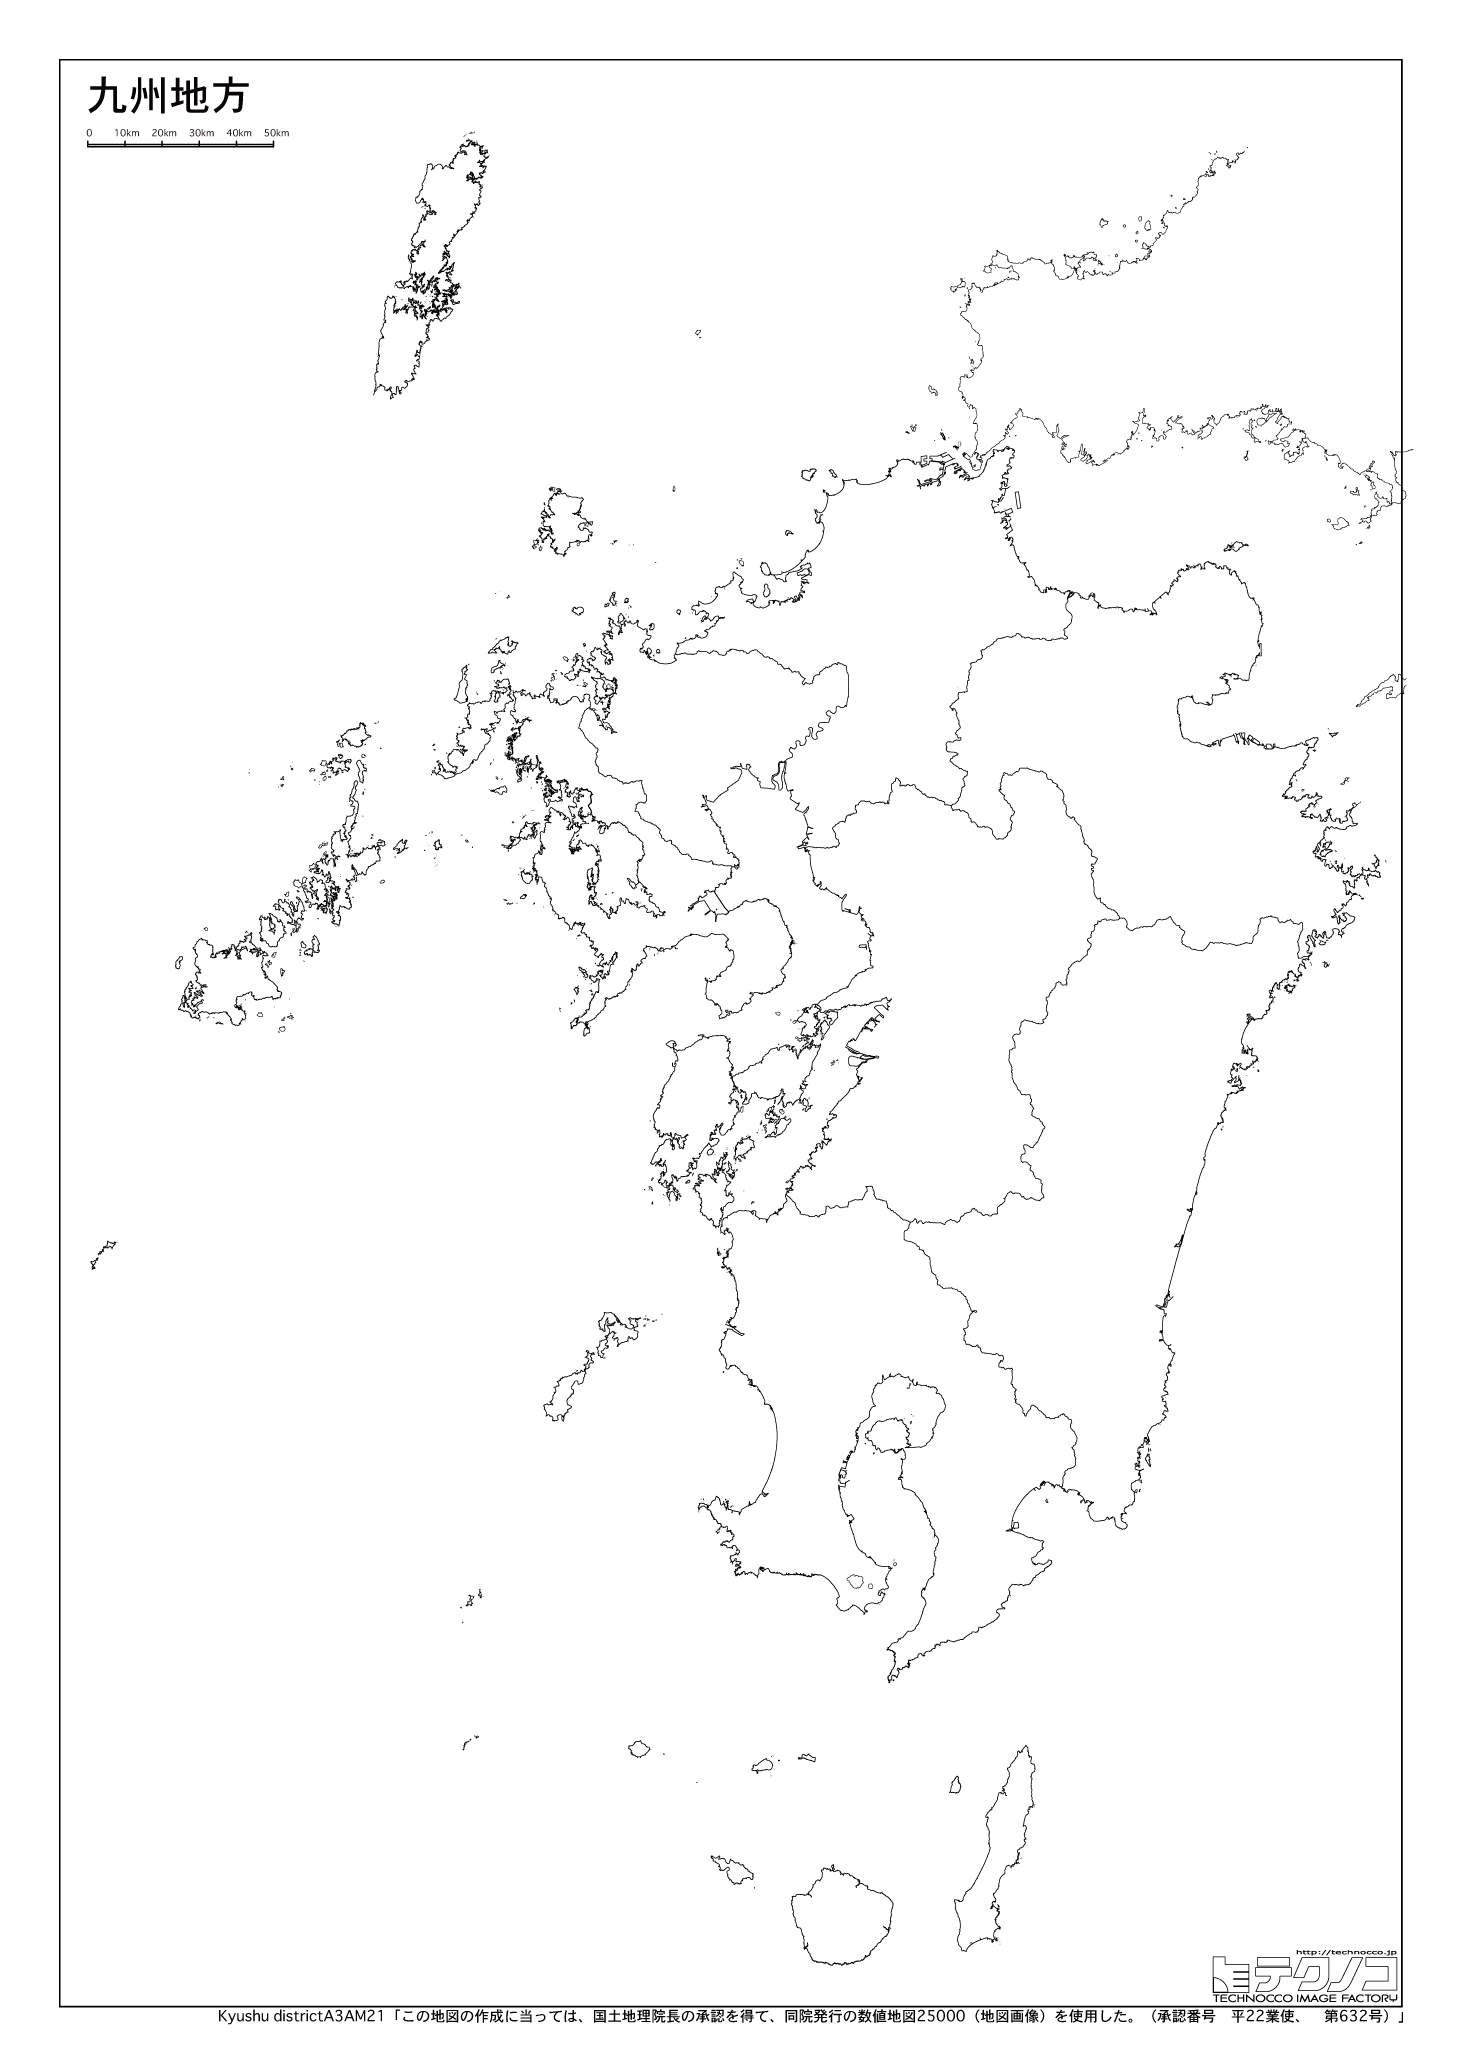 九州地方の白地図